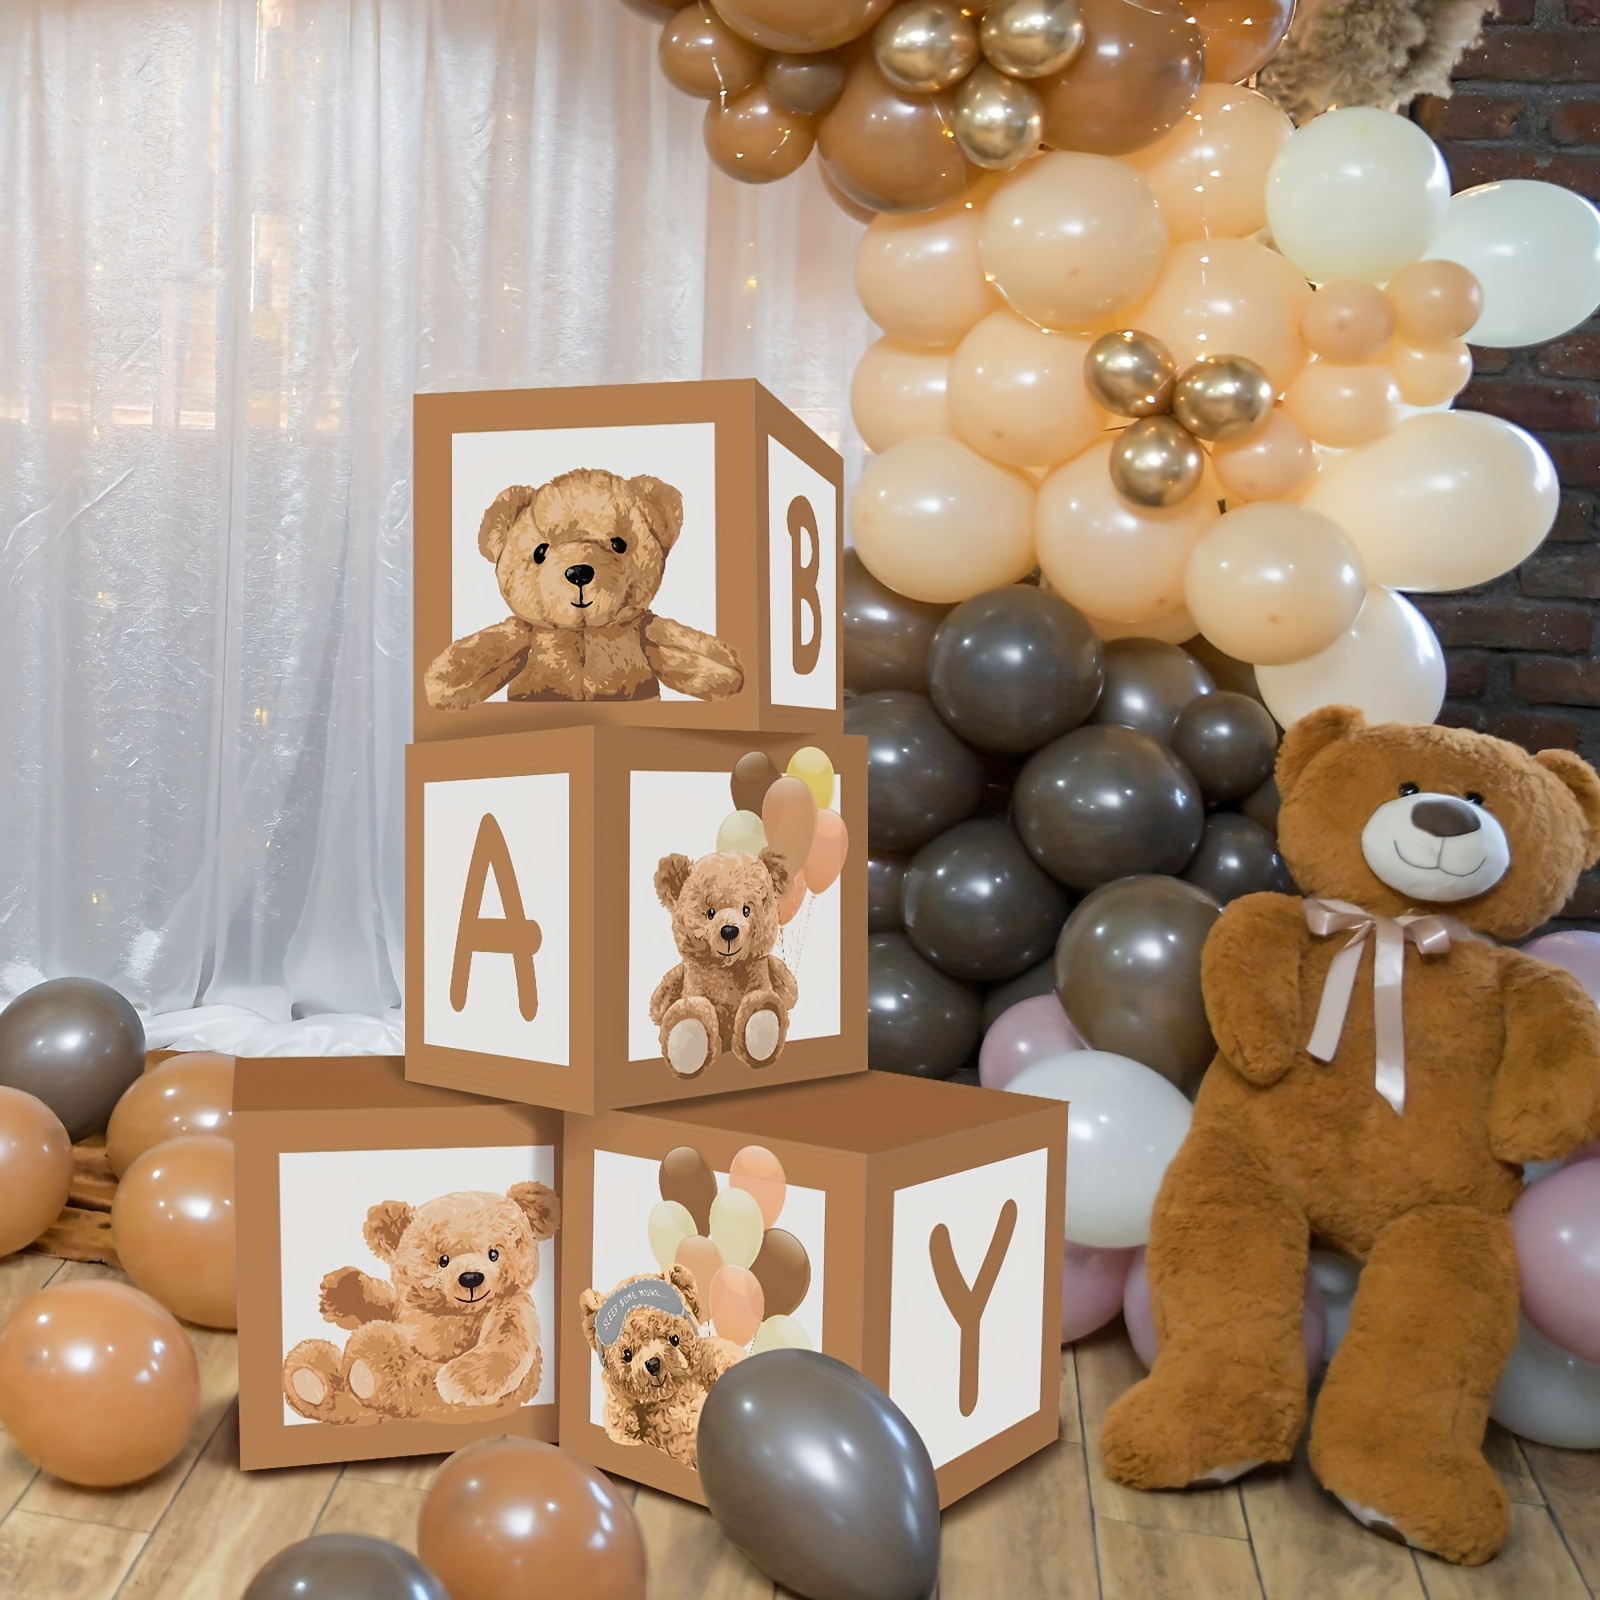  Cajas de baby shower para decoraciones de fiesta de cumpleaños,  4 bloques de madera de grano marrón con letras de bebé, letras impresas,  decoración de centro de mesa de primer cumpleaños